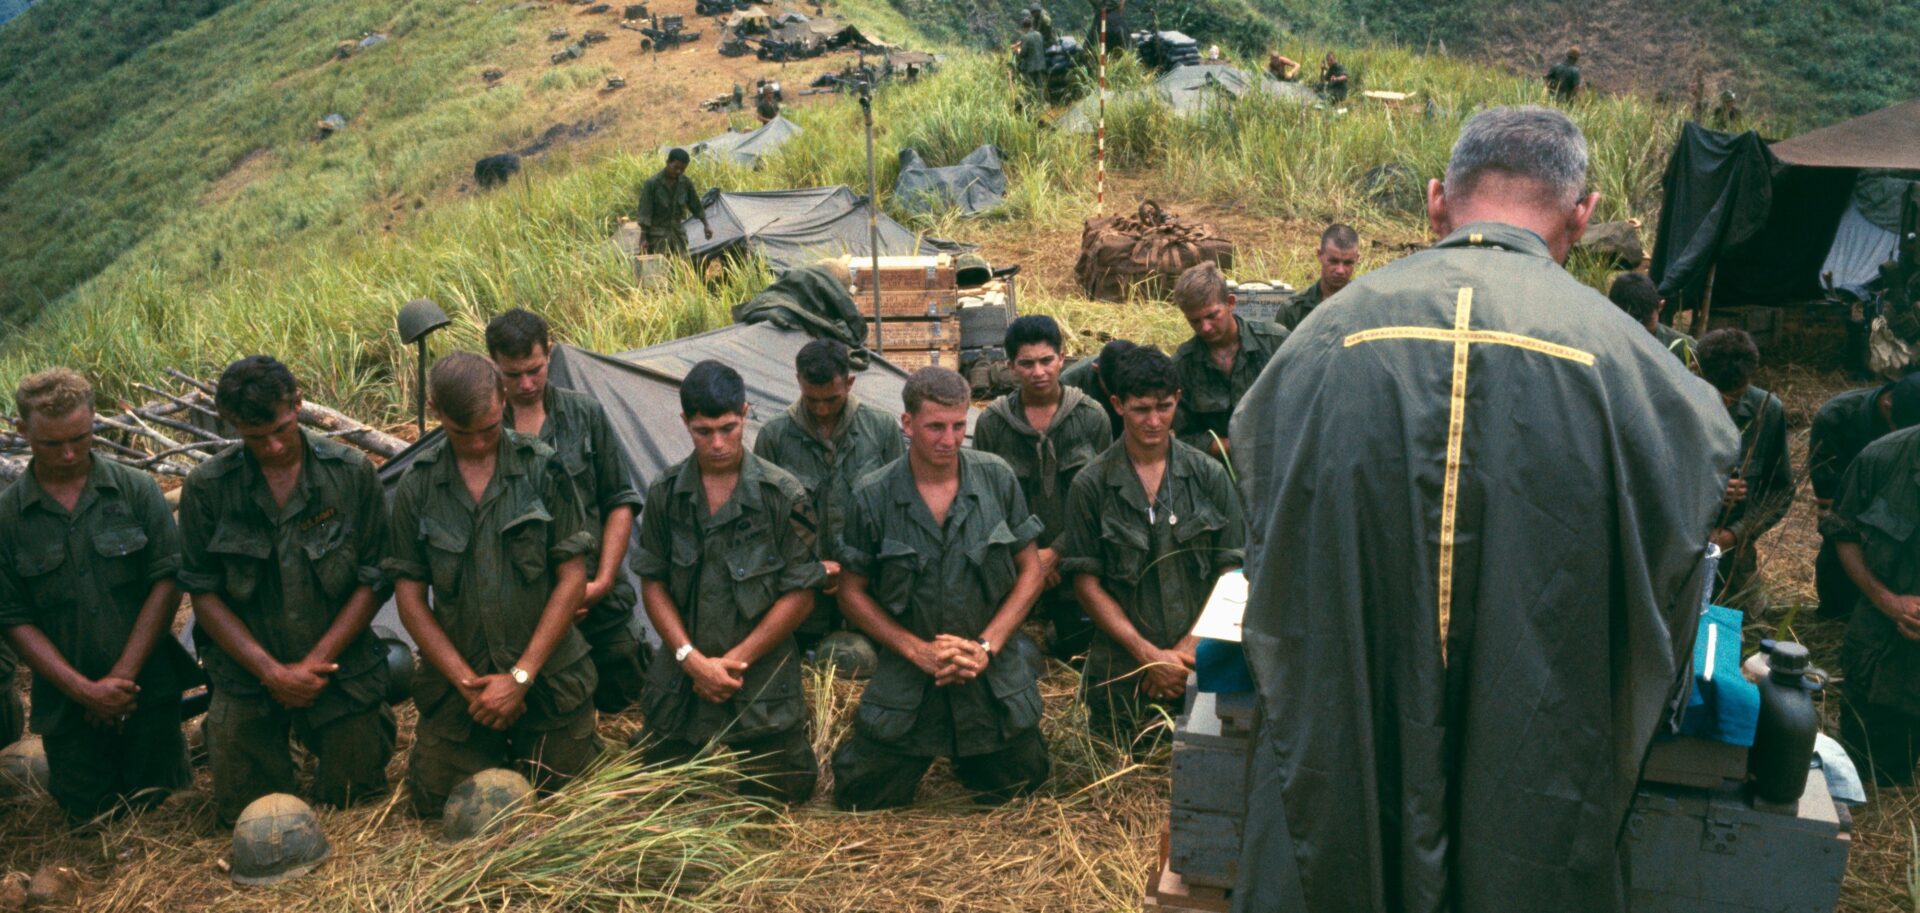 La guerre est-elle compatible avec la morale chrétienne? | ici une cérémonie religieuse pendant la Guerre du Vietnam © manhhai/Flickr/CC BY 2.0